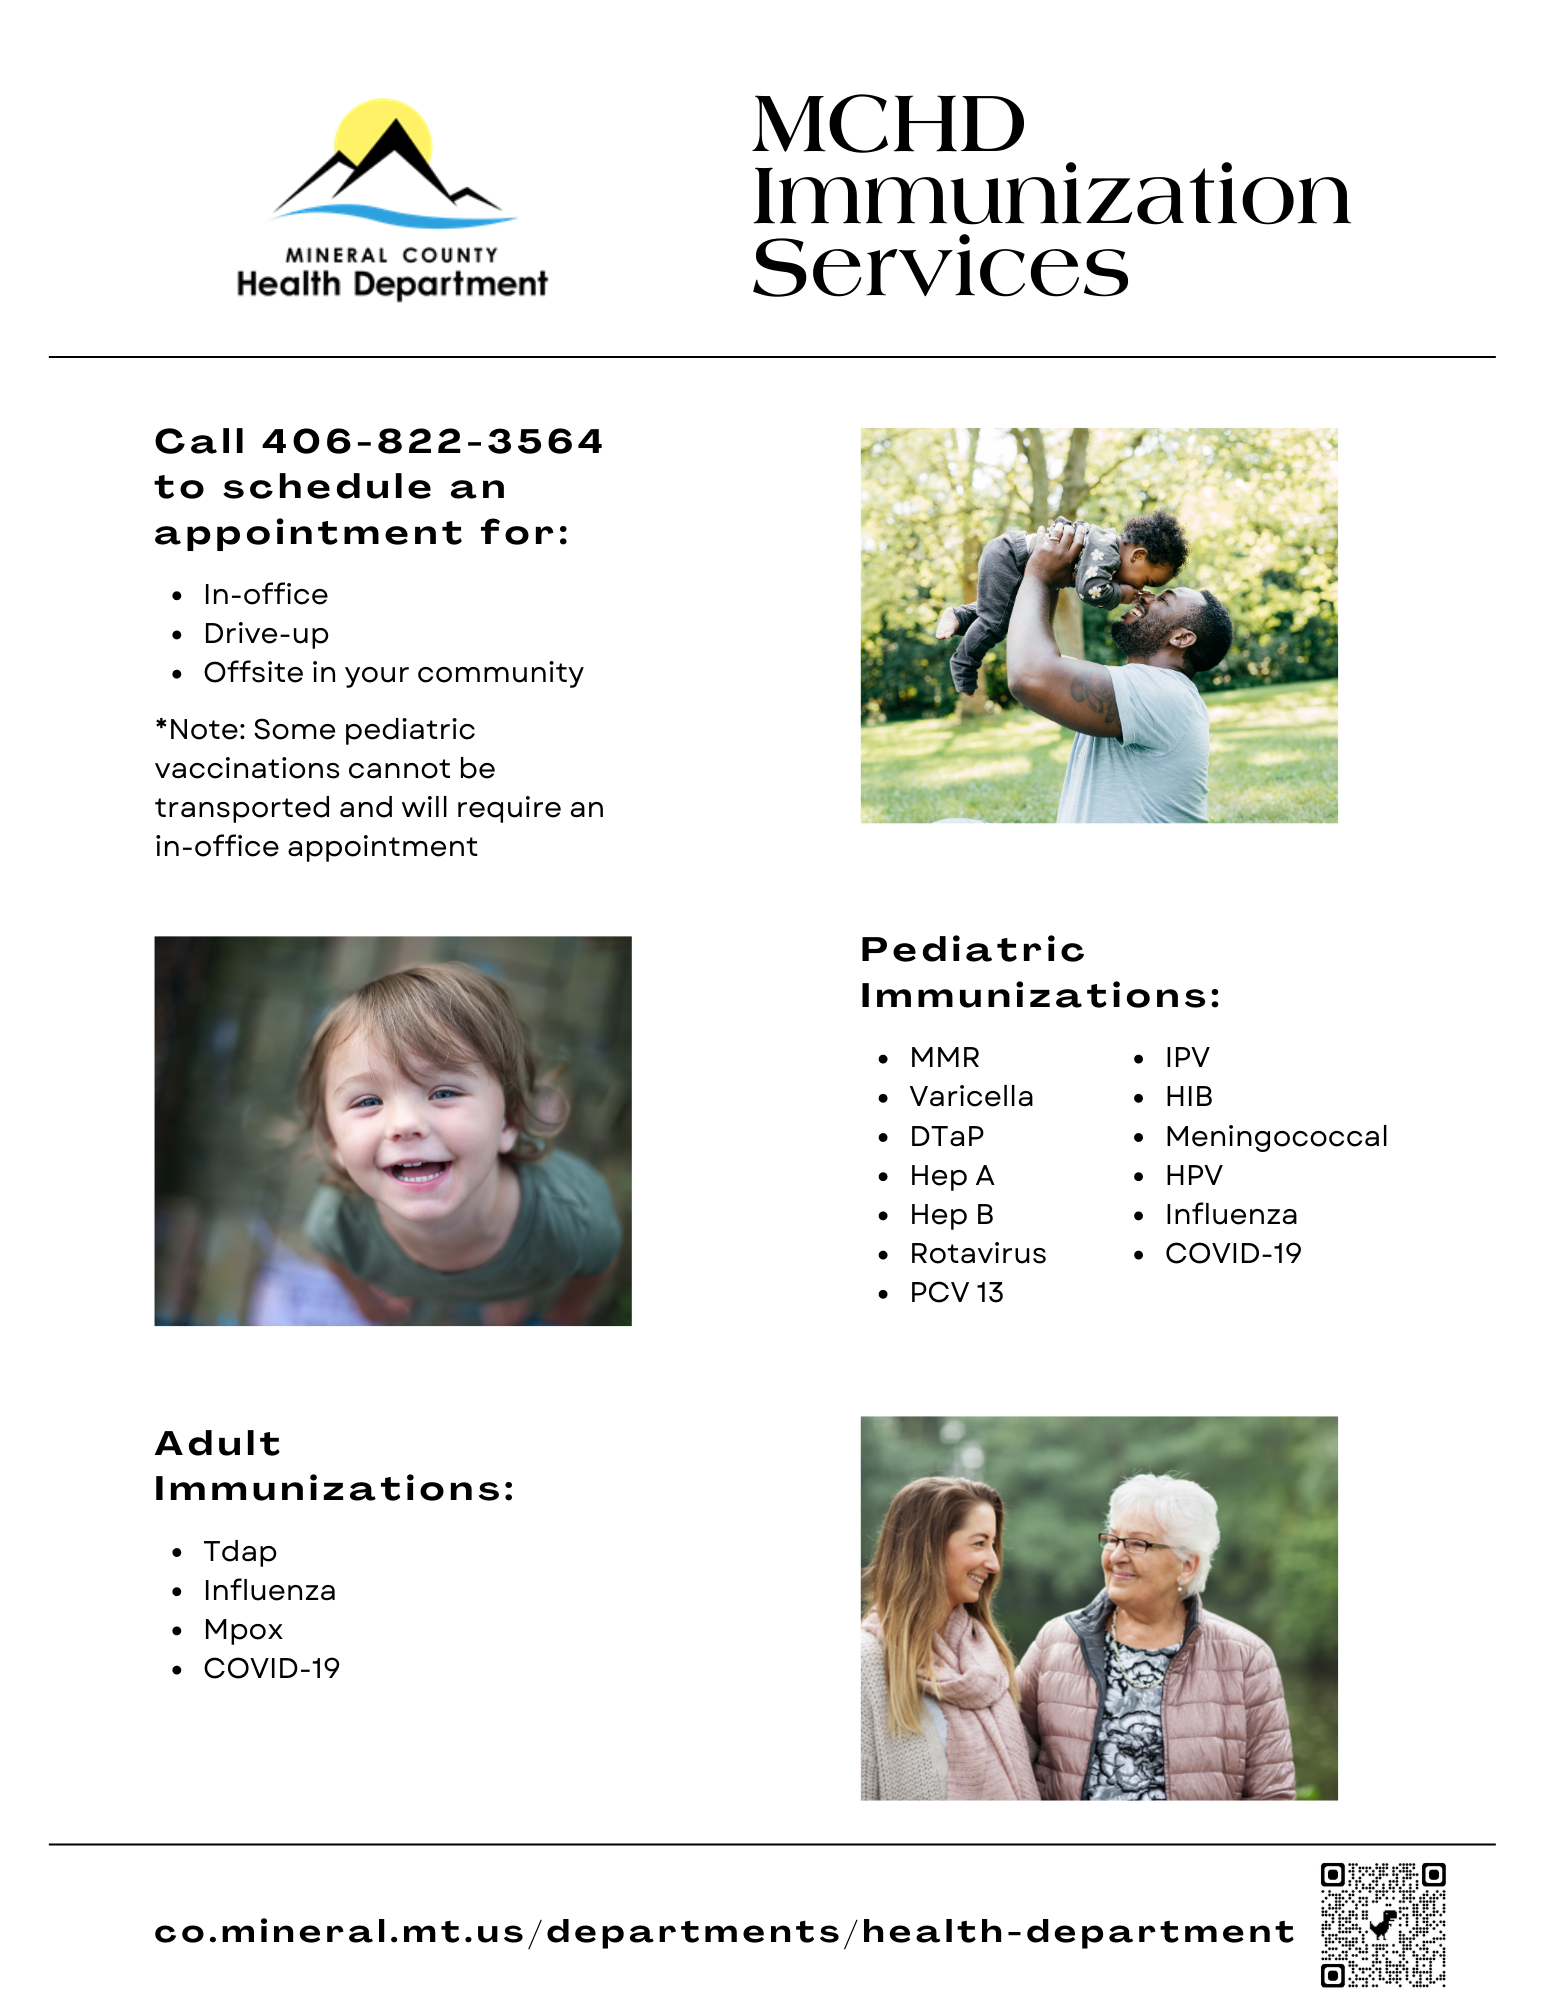 MCHD Immunization Services